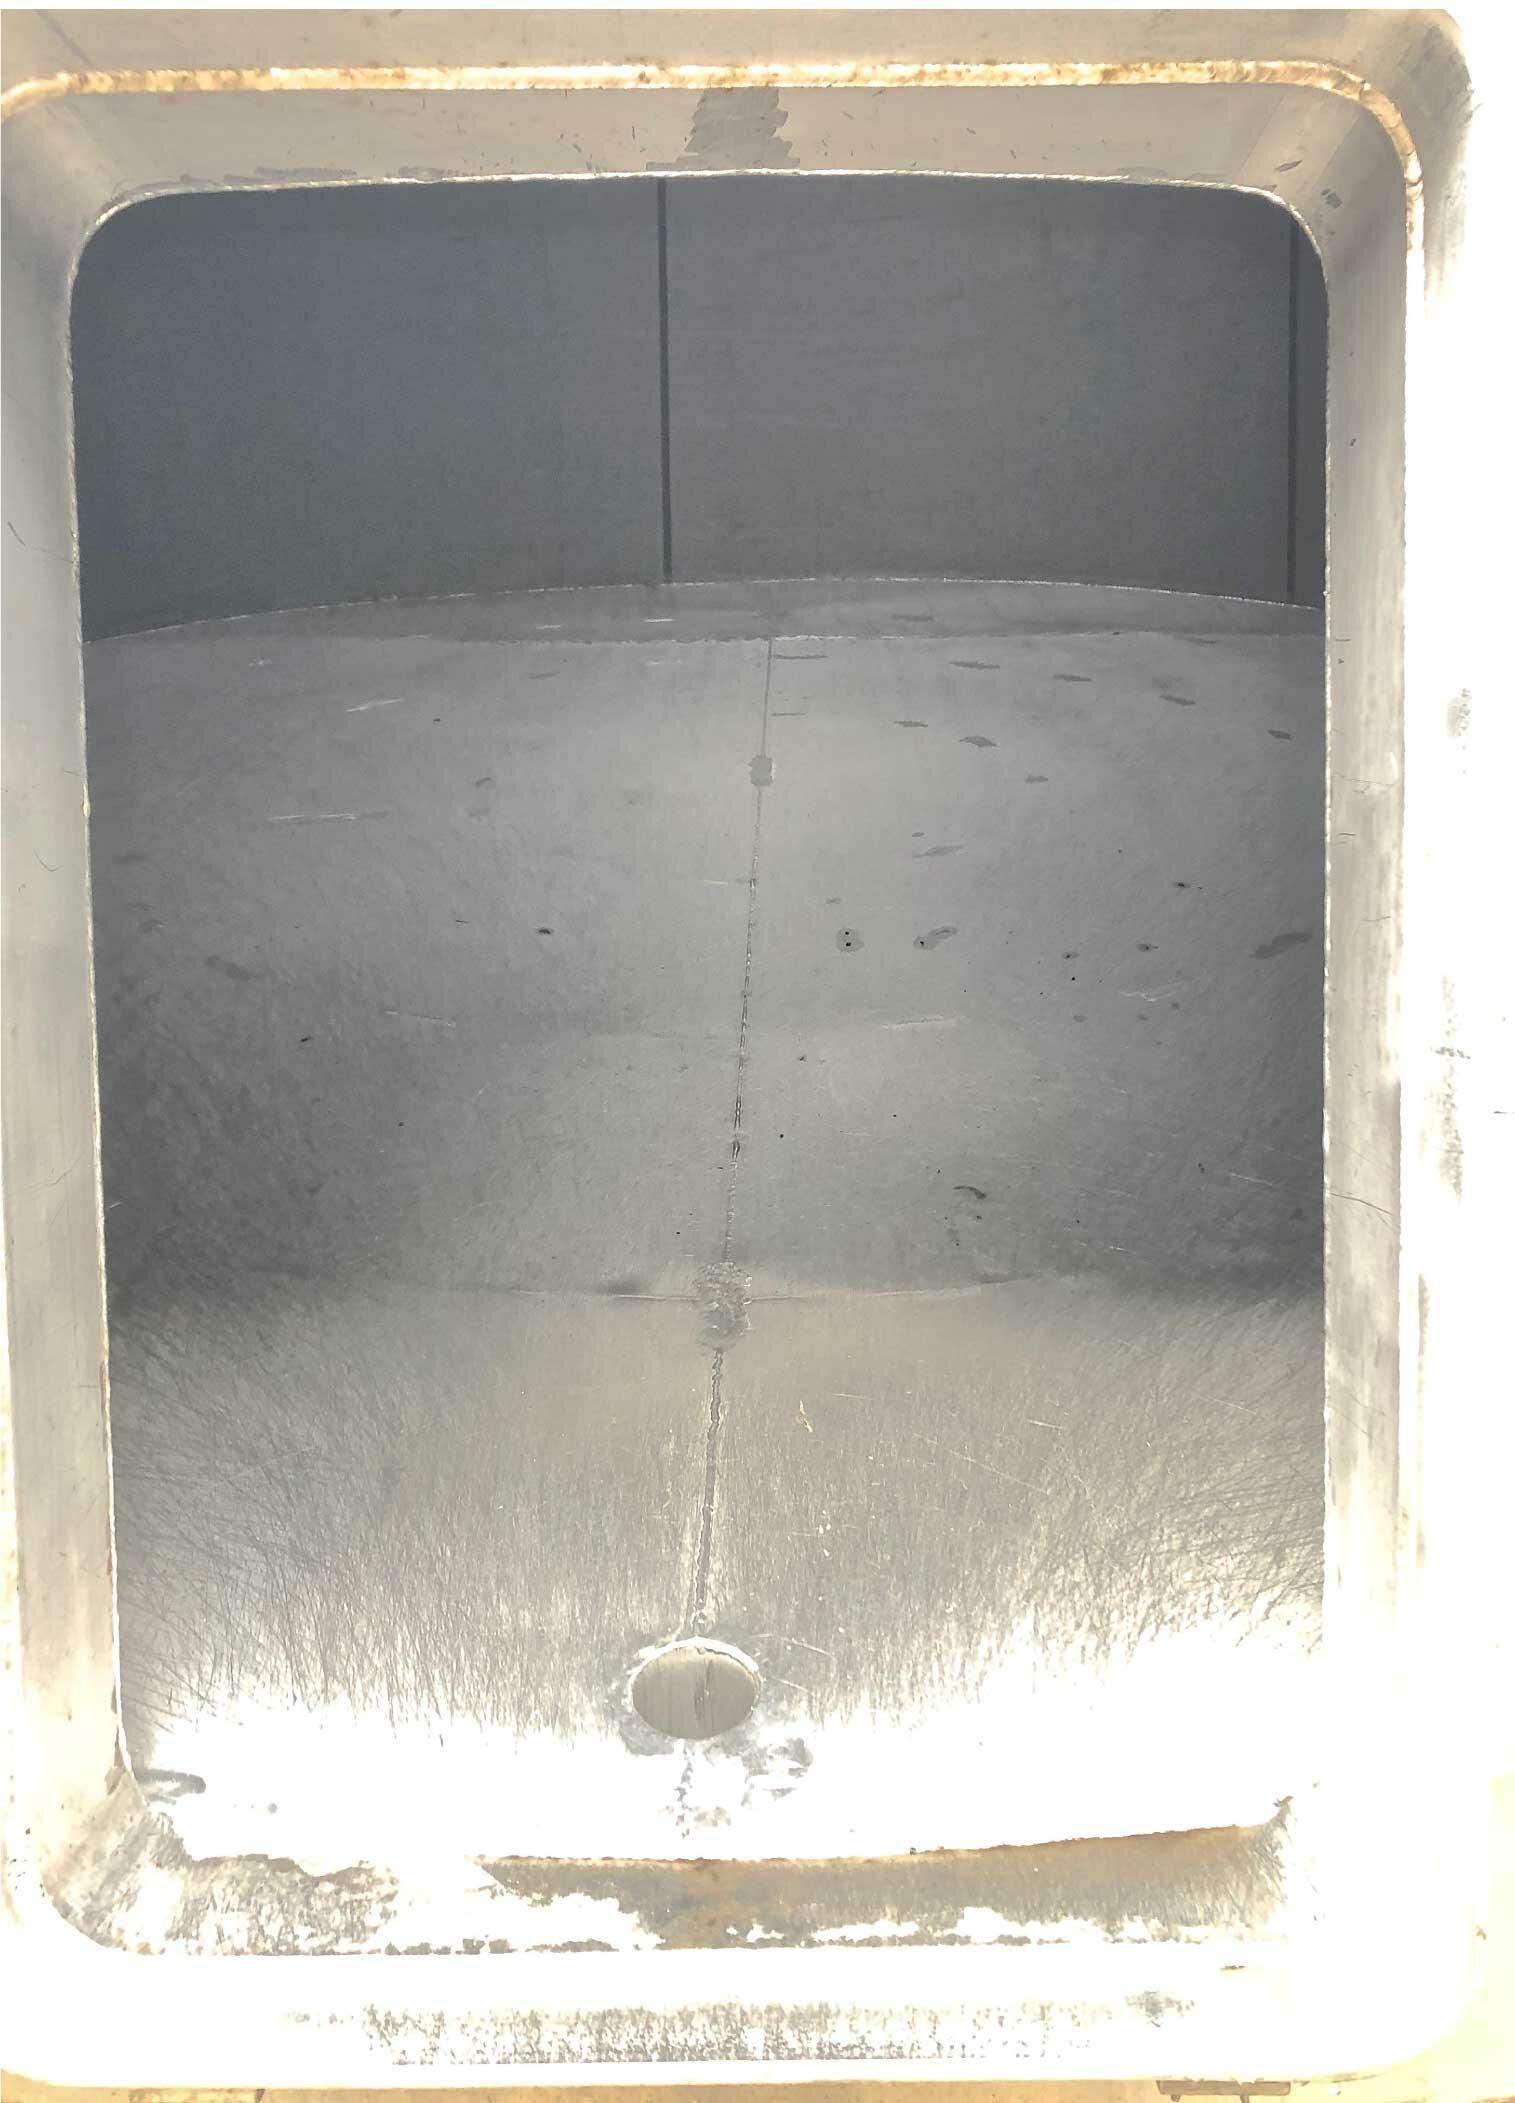 Cuve de stockage inox 304 - Volume : 260 hectos (26000 litres)